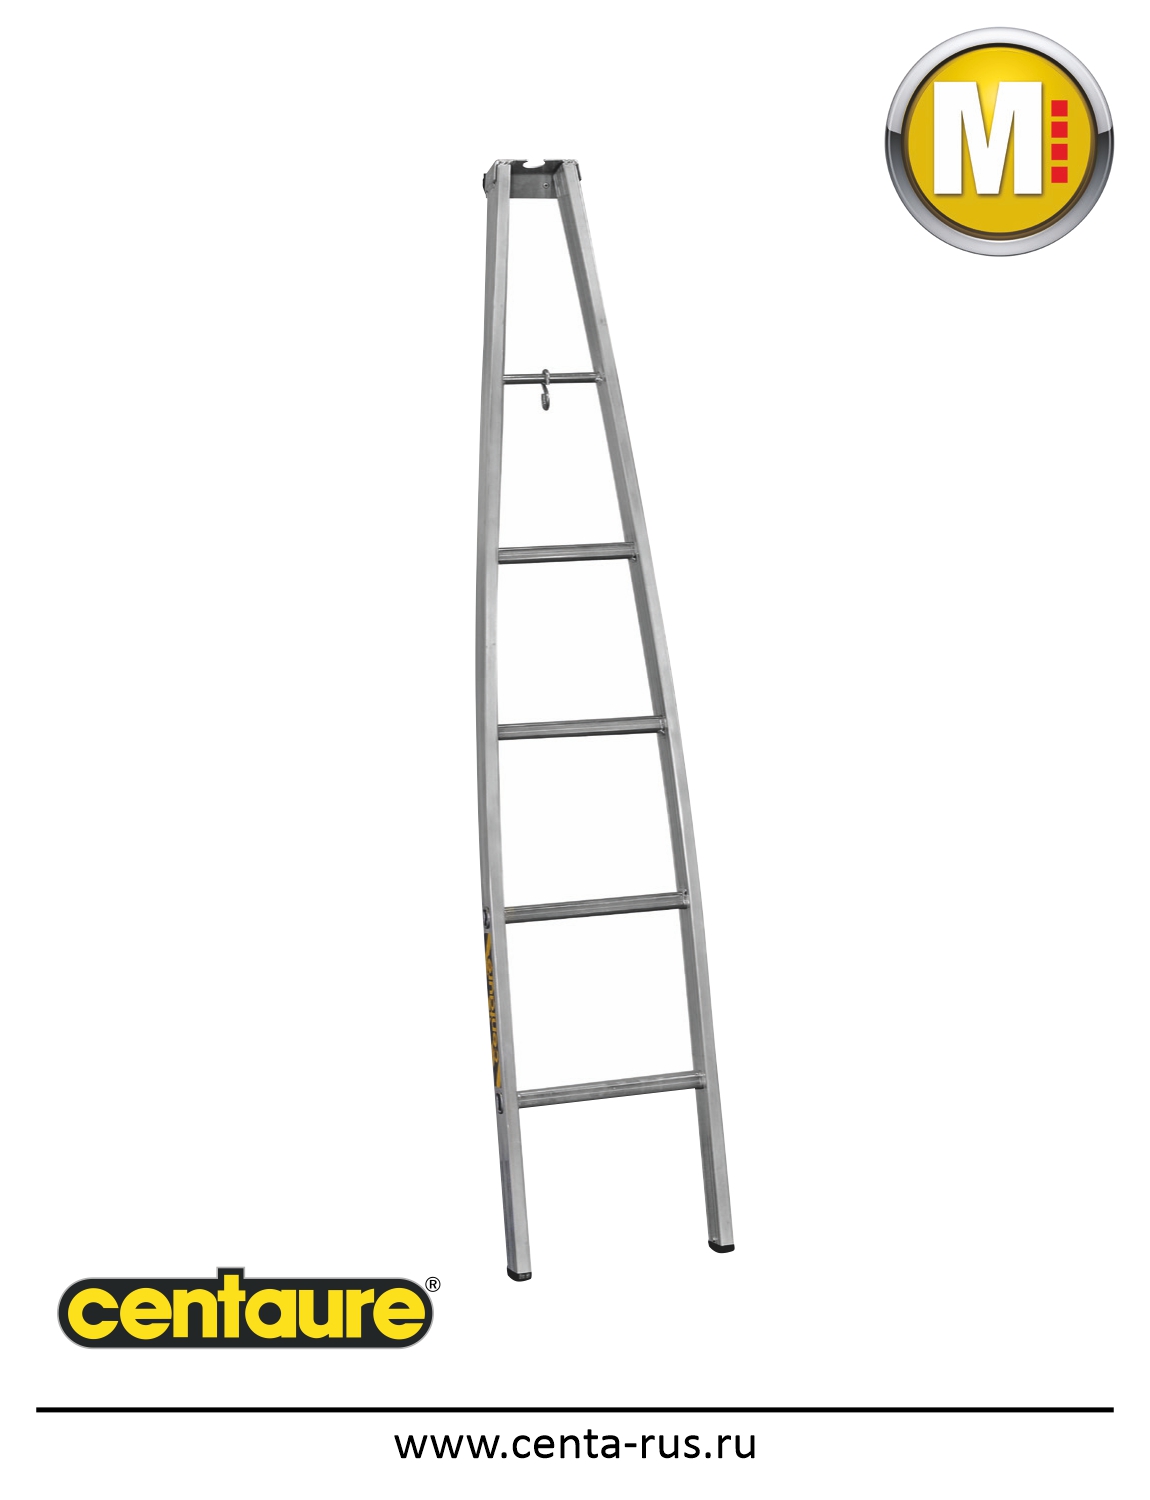 Алюминиевая лестница Centaure N для мойщиков окон 415101